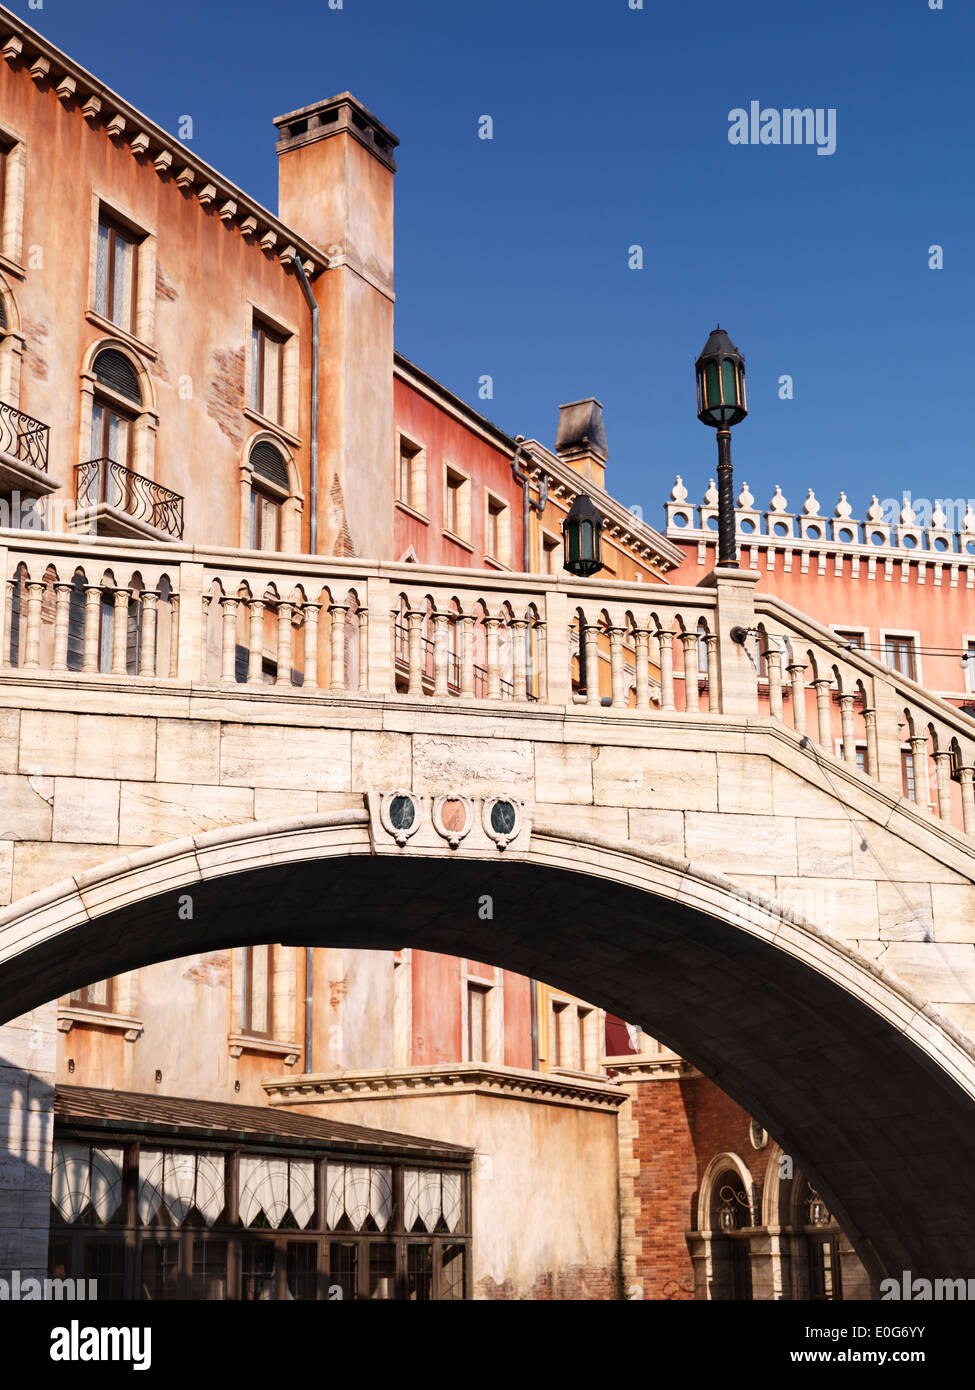 Arched bridge Venetian architecture buildings Stock Photo